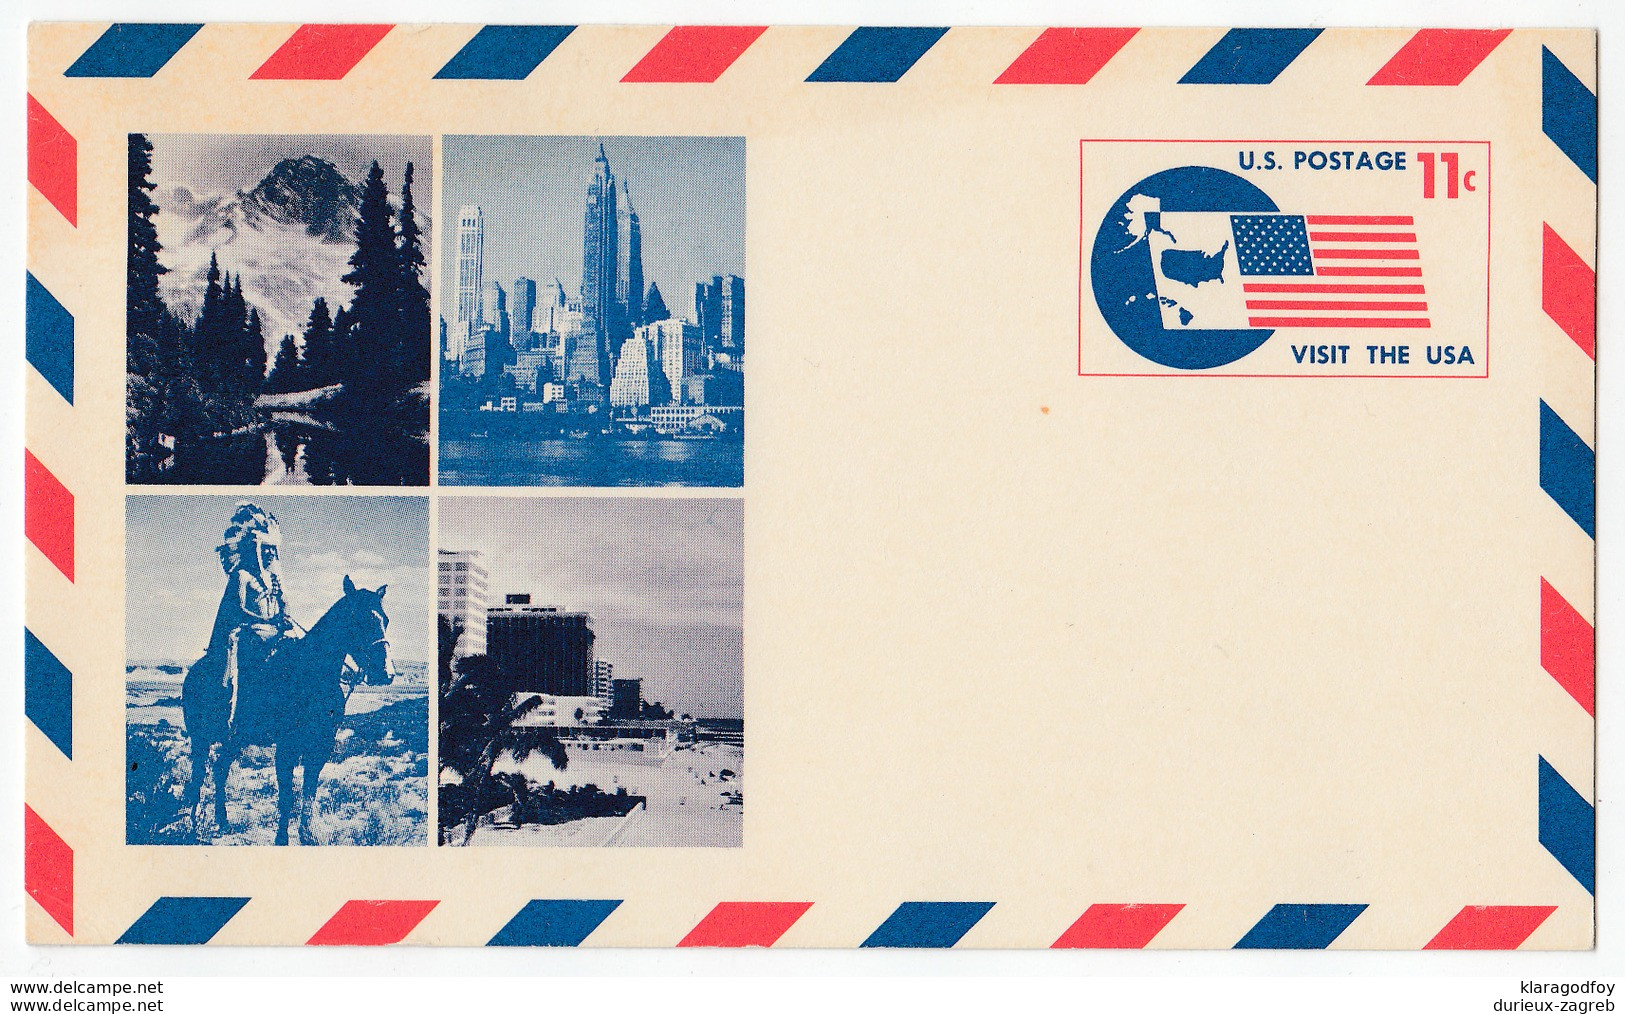 Visit The USA Postal Stationery Postcard Unused Bb170325 - 1961-80